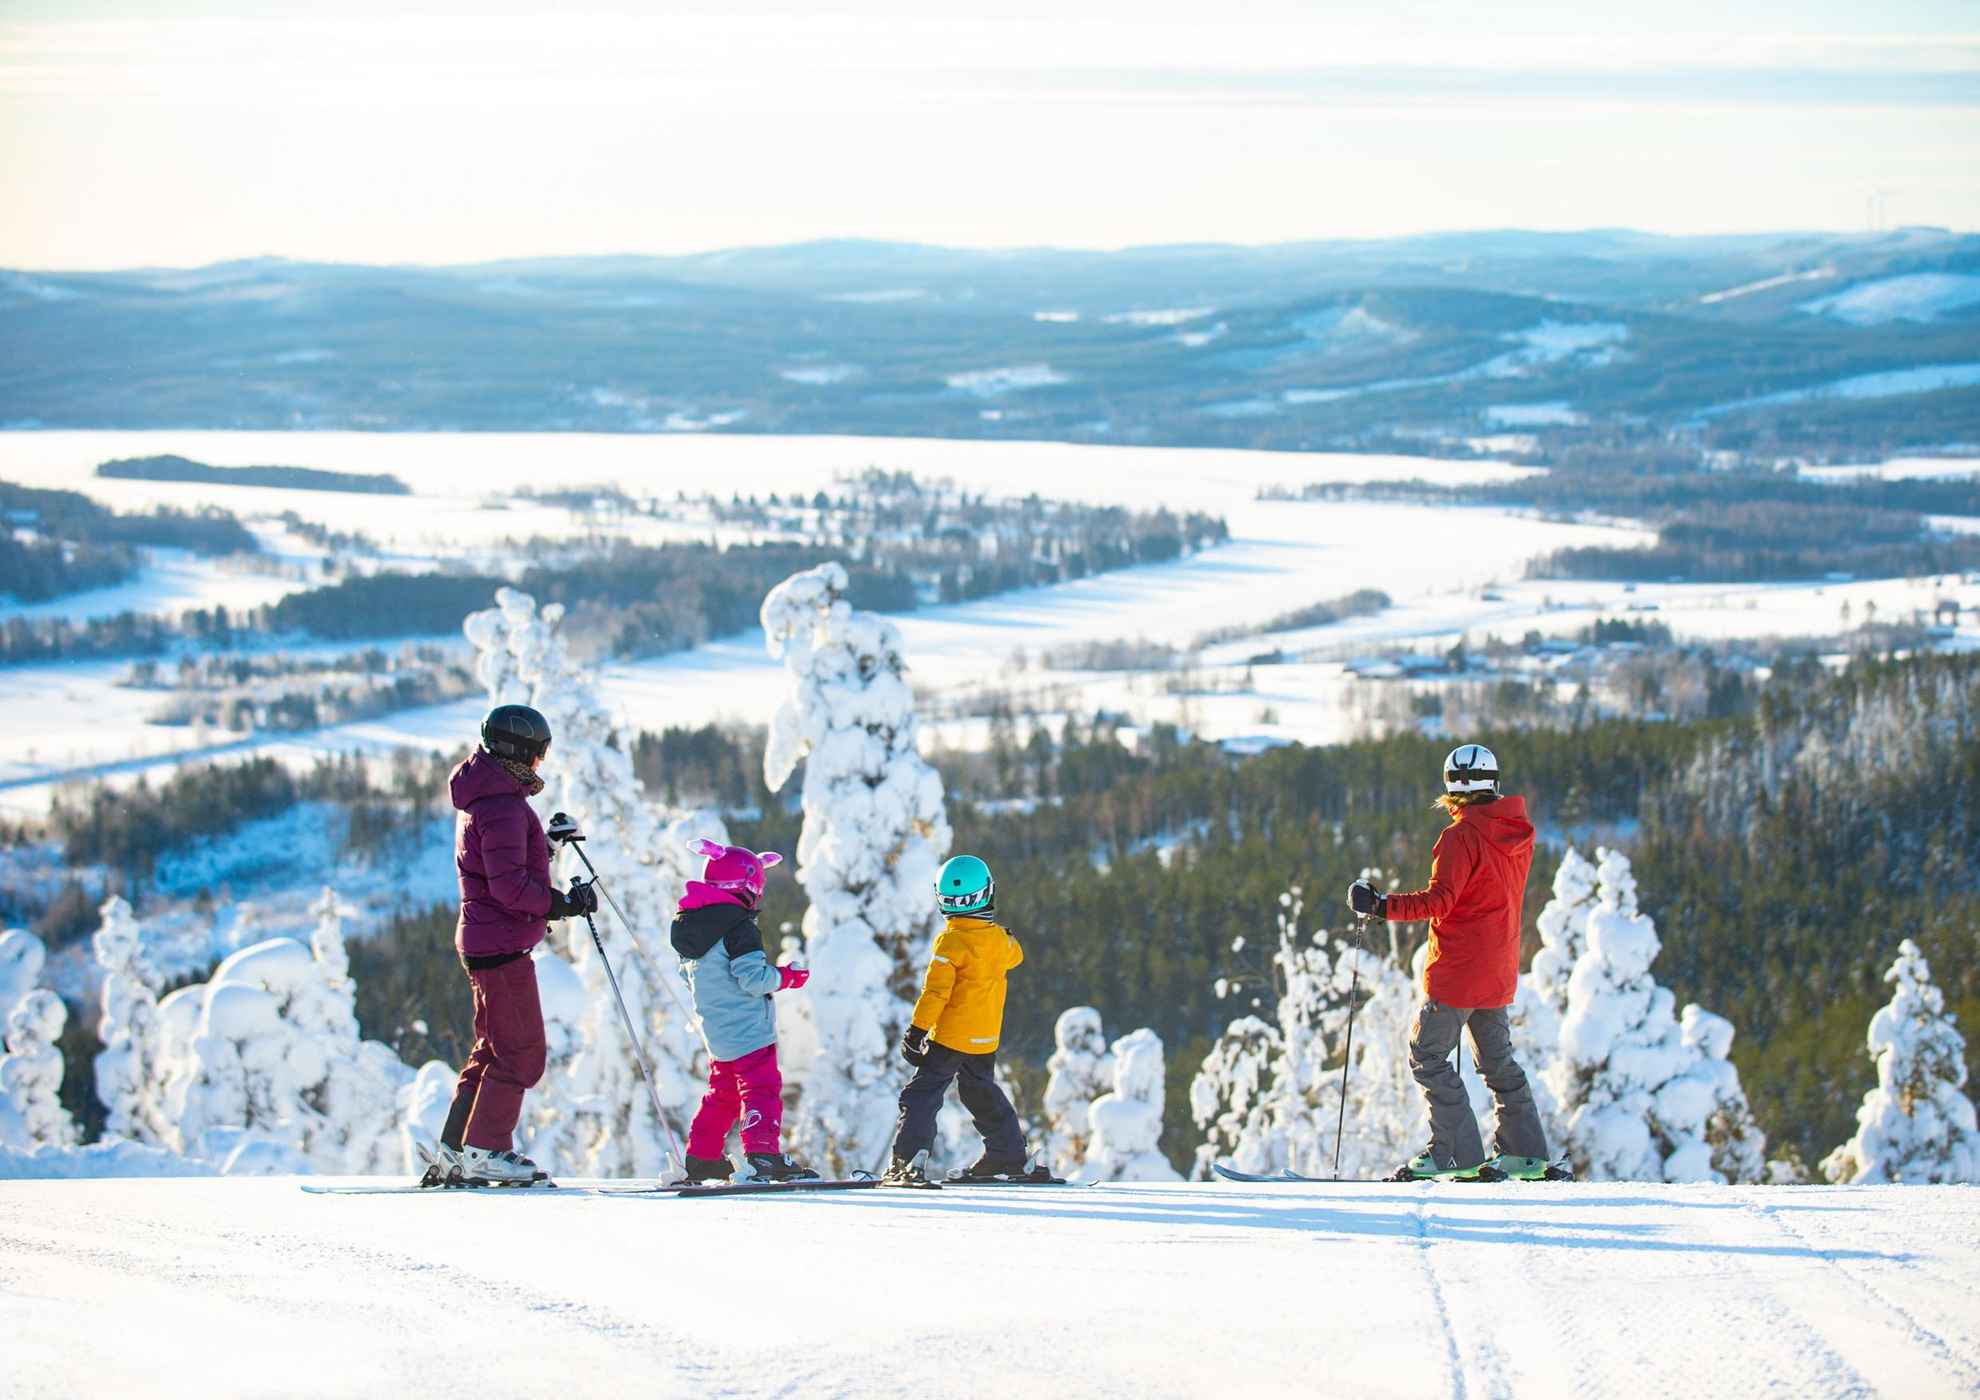 Deux enfants et deux adultes avec des affaires de ski se tiennent debout sur leurs skis en haut d'une piste de ski. On voit des arbres et des montagnes enneigés en arrière-plan..